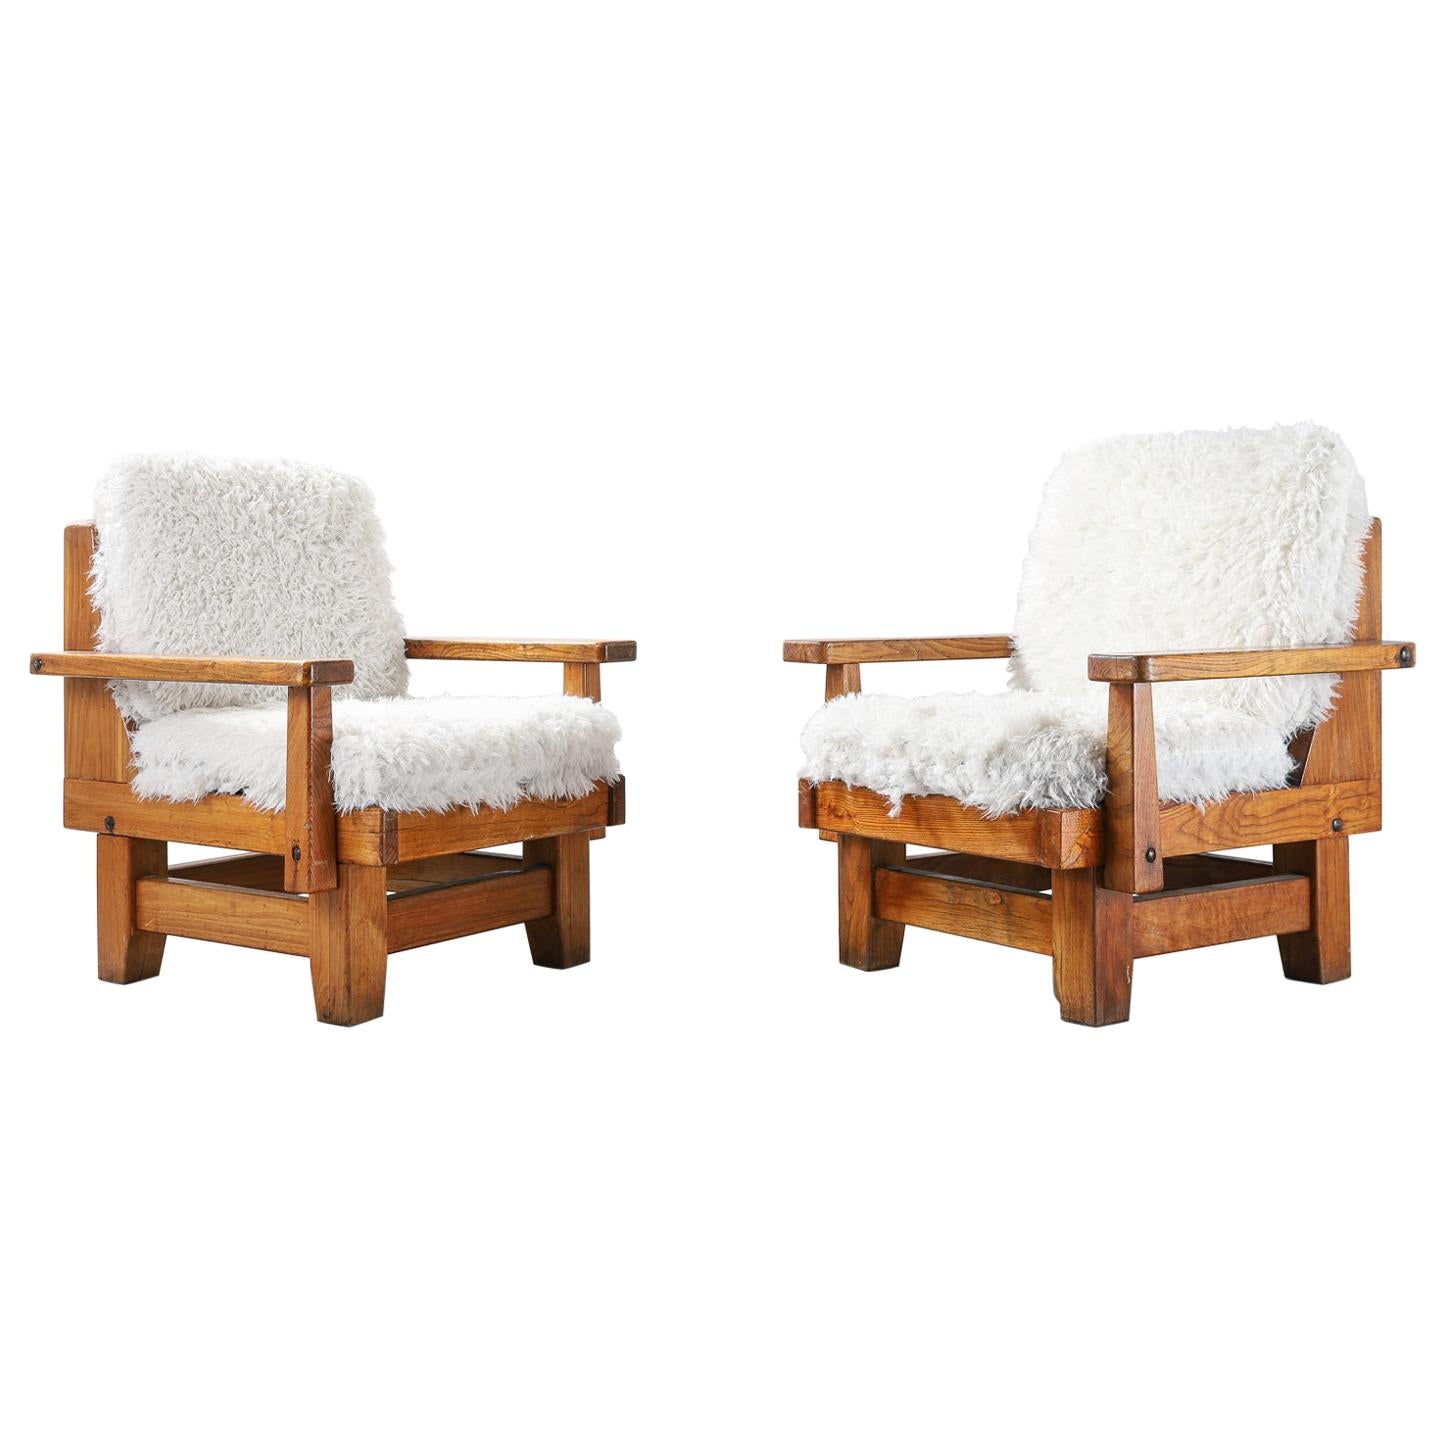 Paar nordspanische Sessel mit Schafsfell-Polsterungen